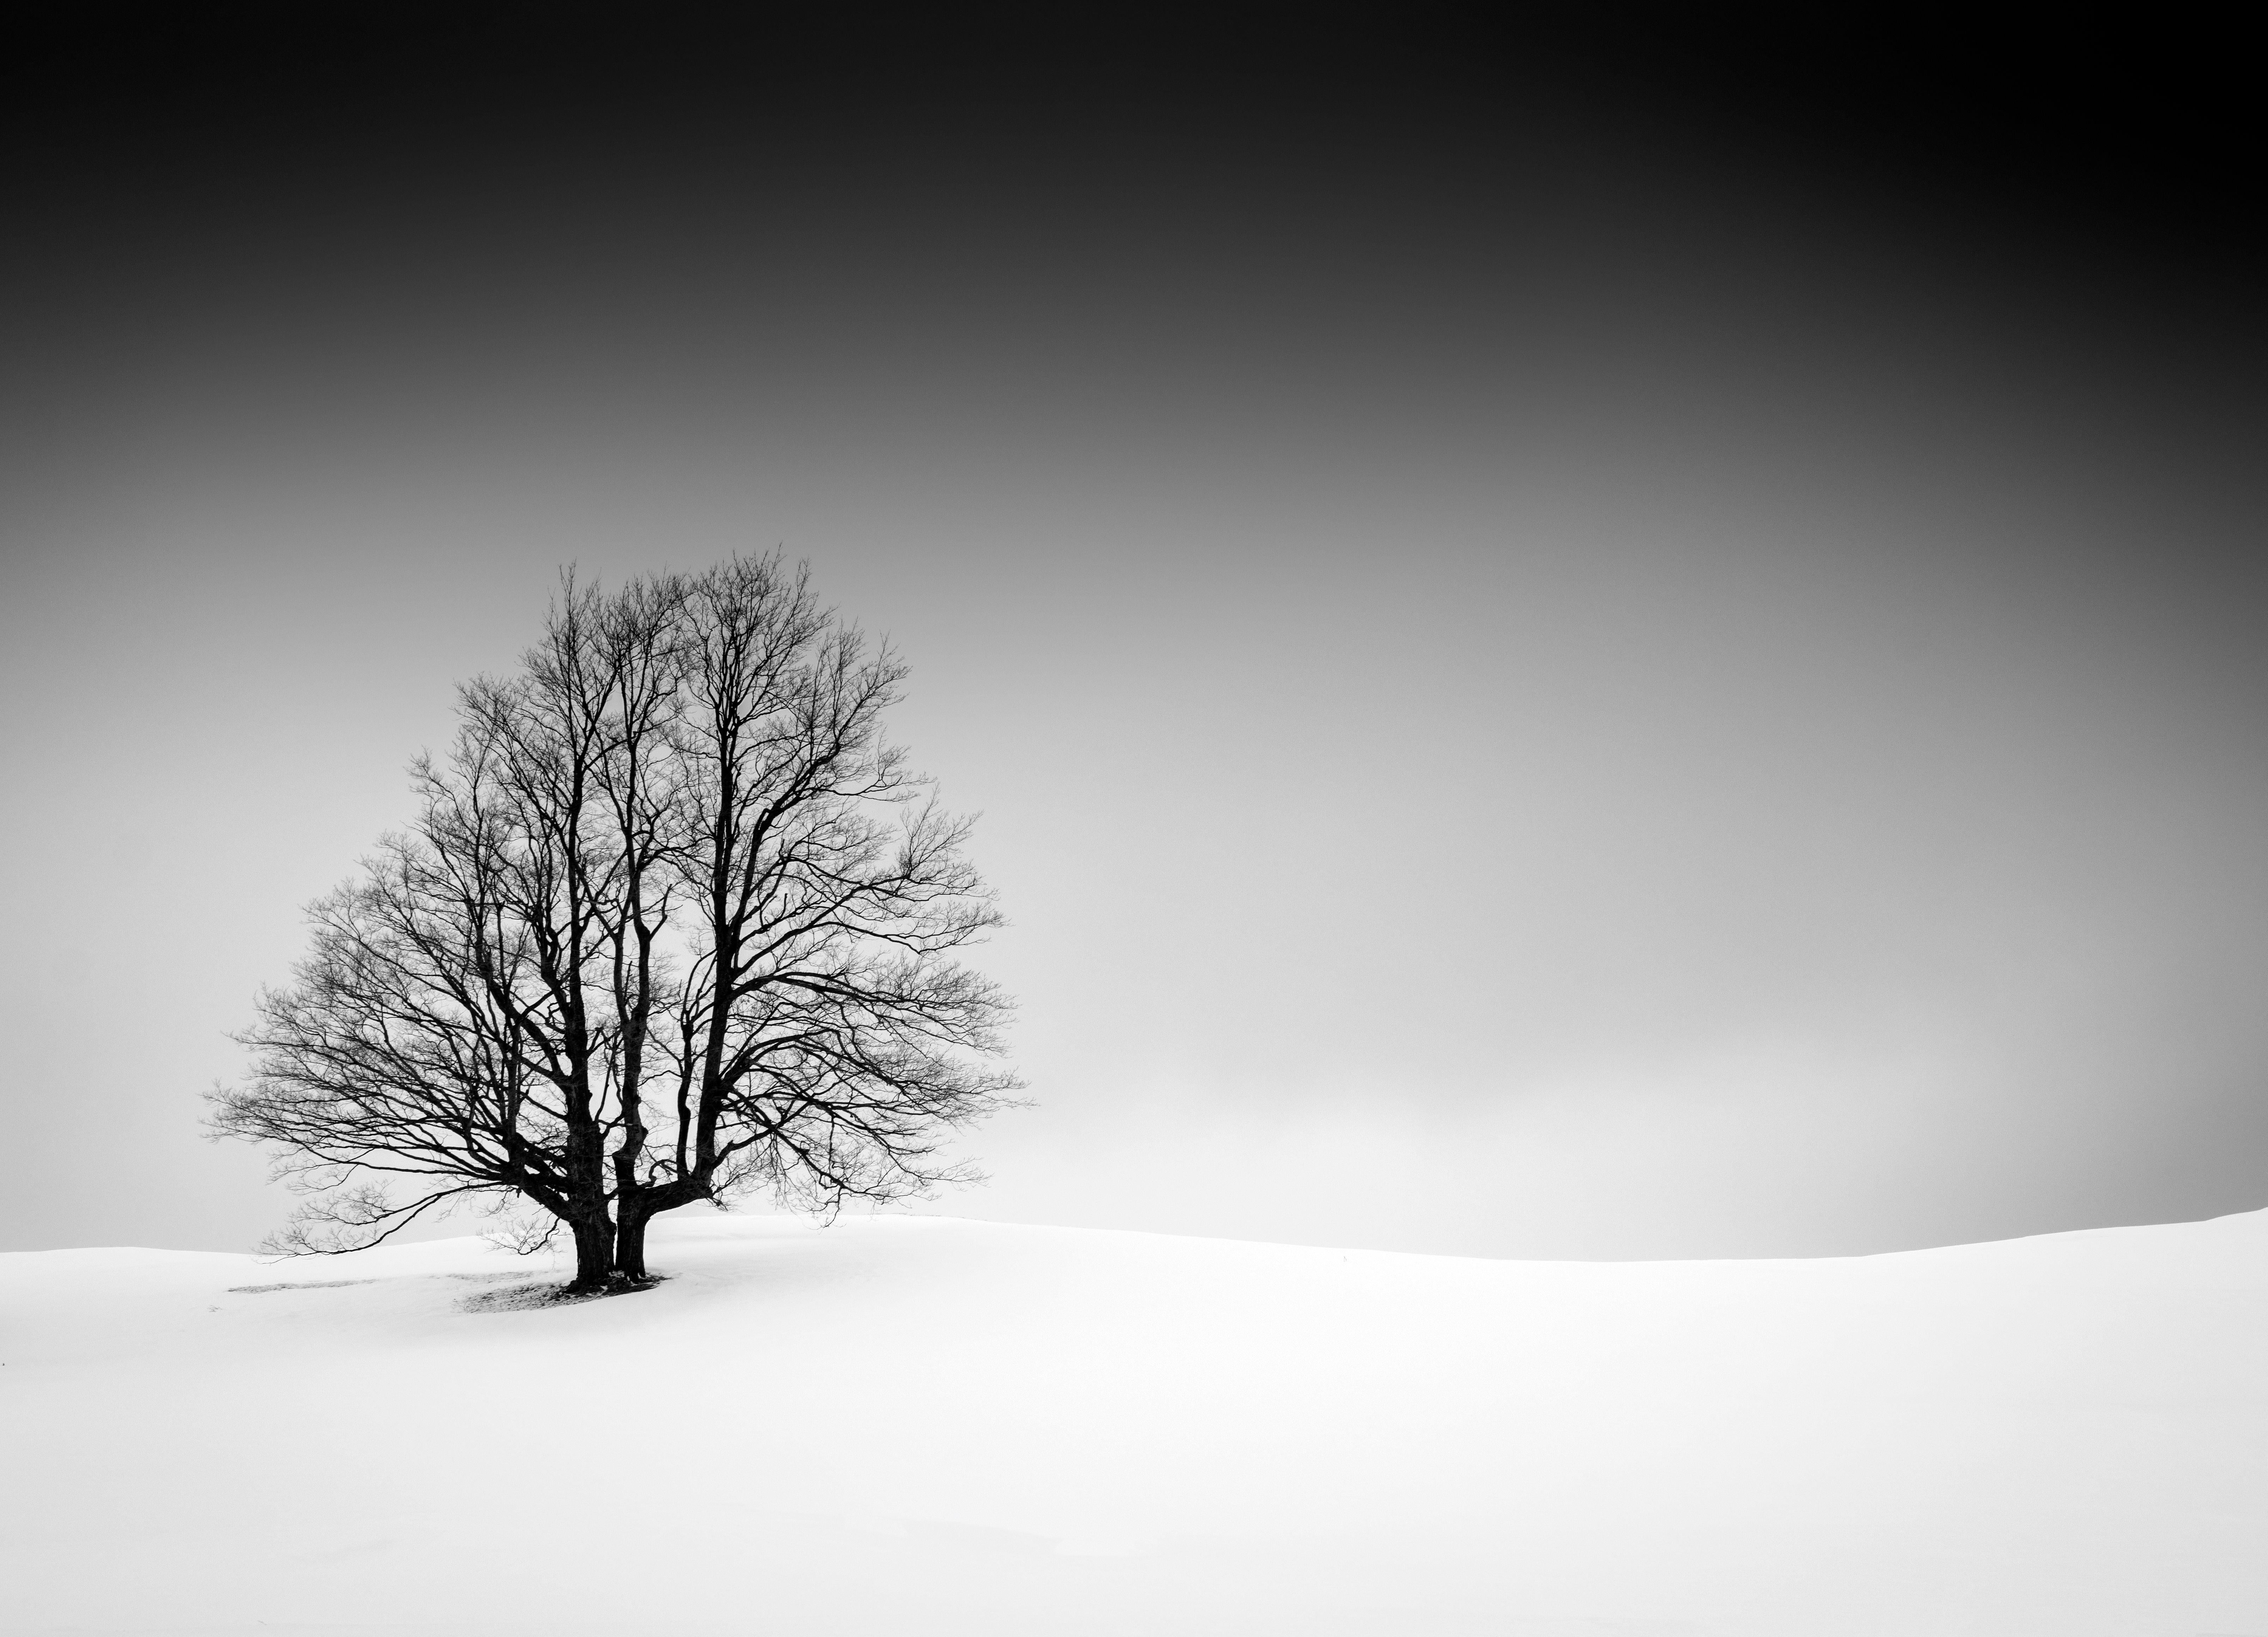 Rick Bogacz Landscape Photograph – „Tree on Snowy Hillside“, signierter archivtauglicher Pigmentdruck